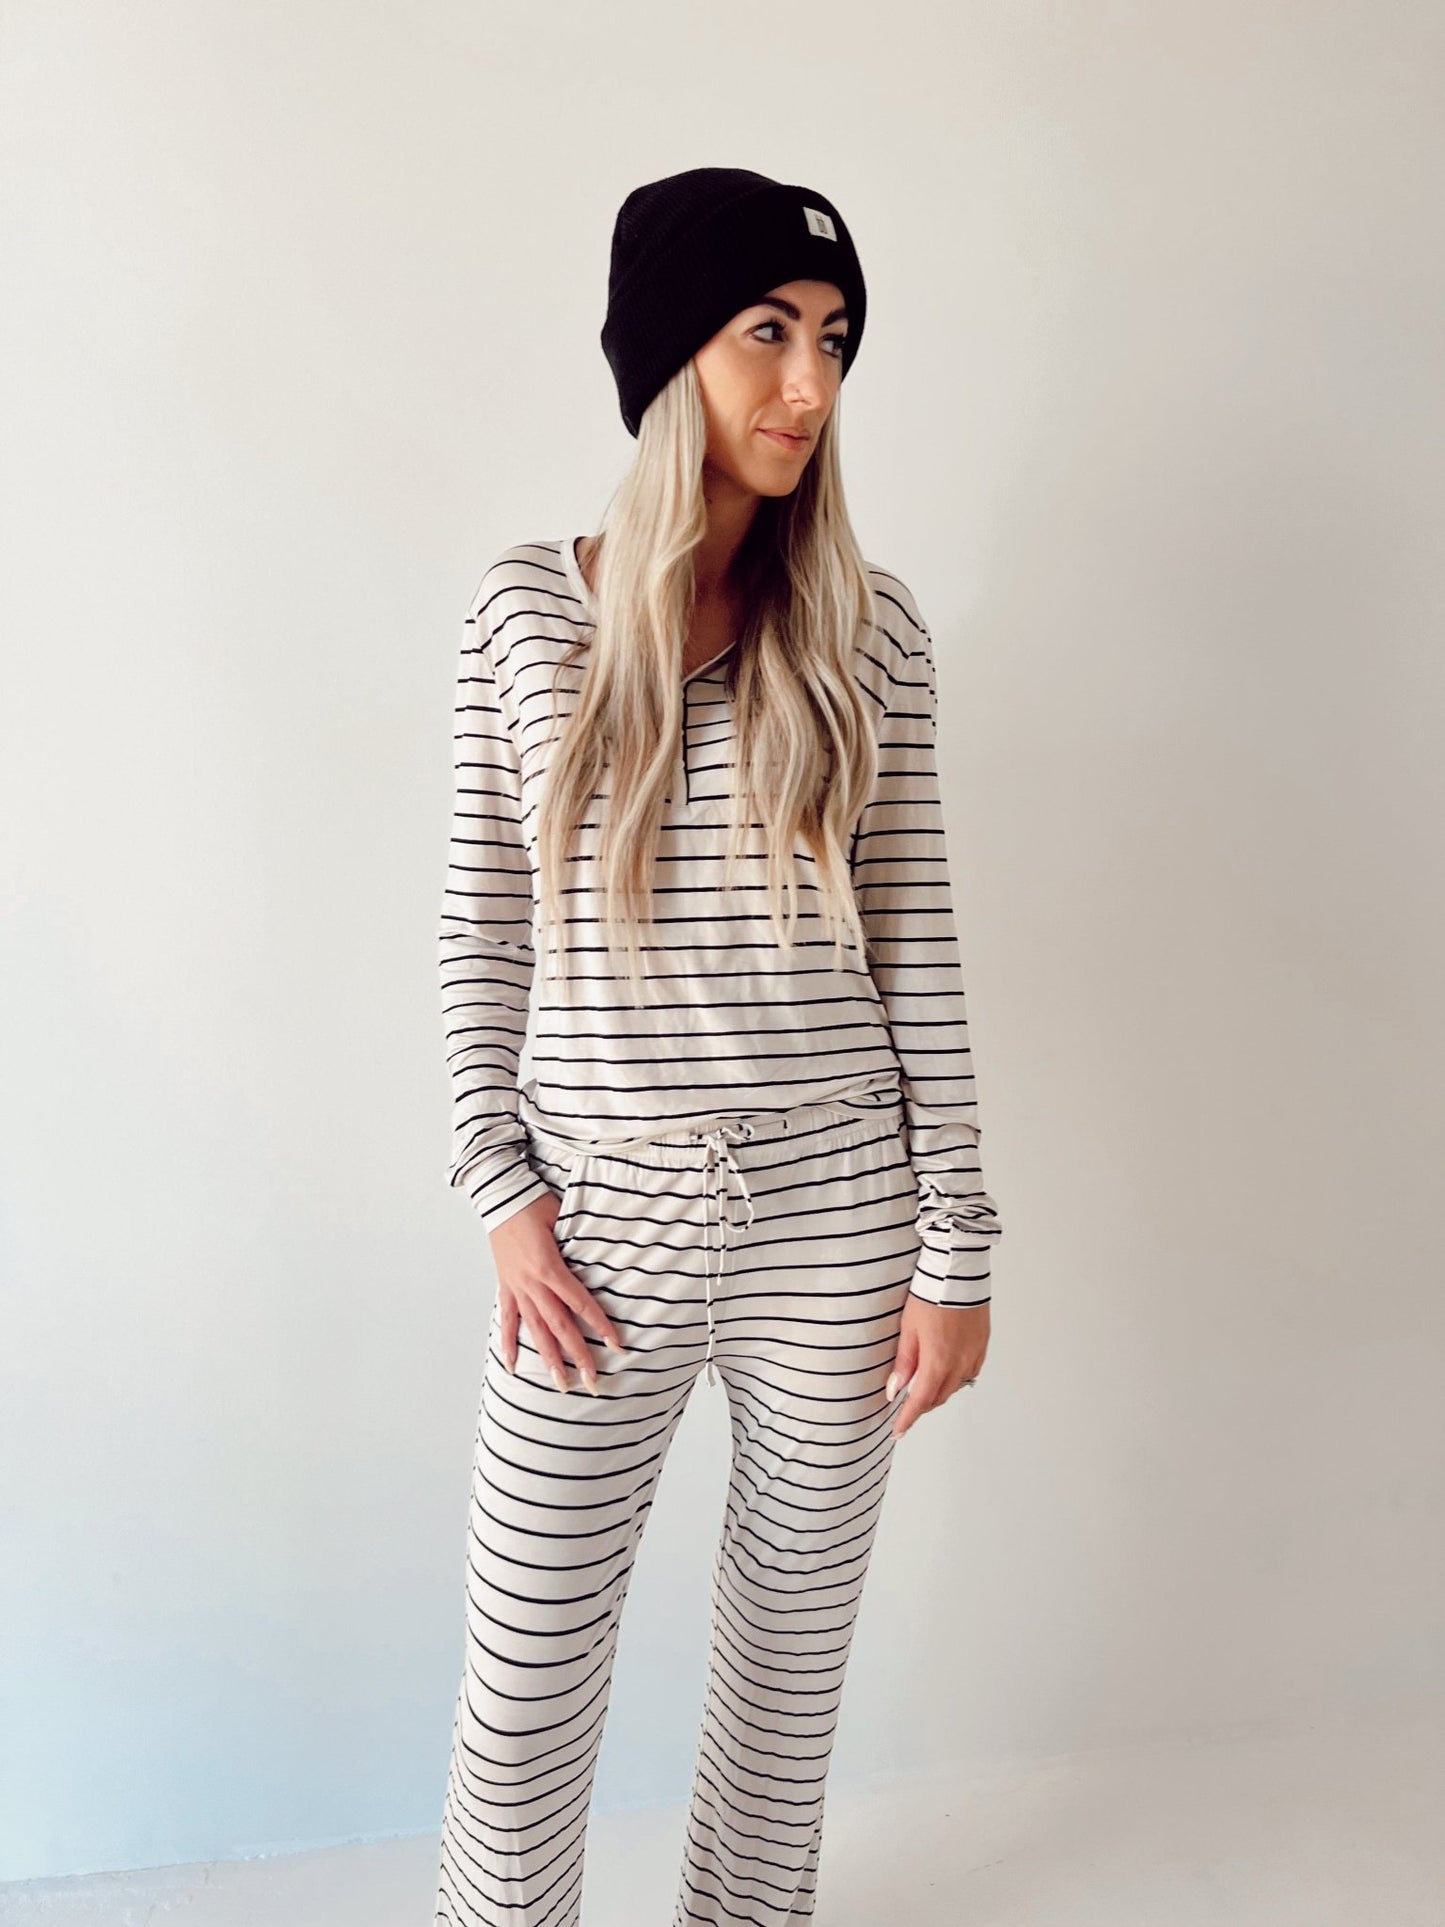 Grey & Black Stripe | Bamboo Women’s Pajamas - Mack & Harvie